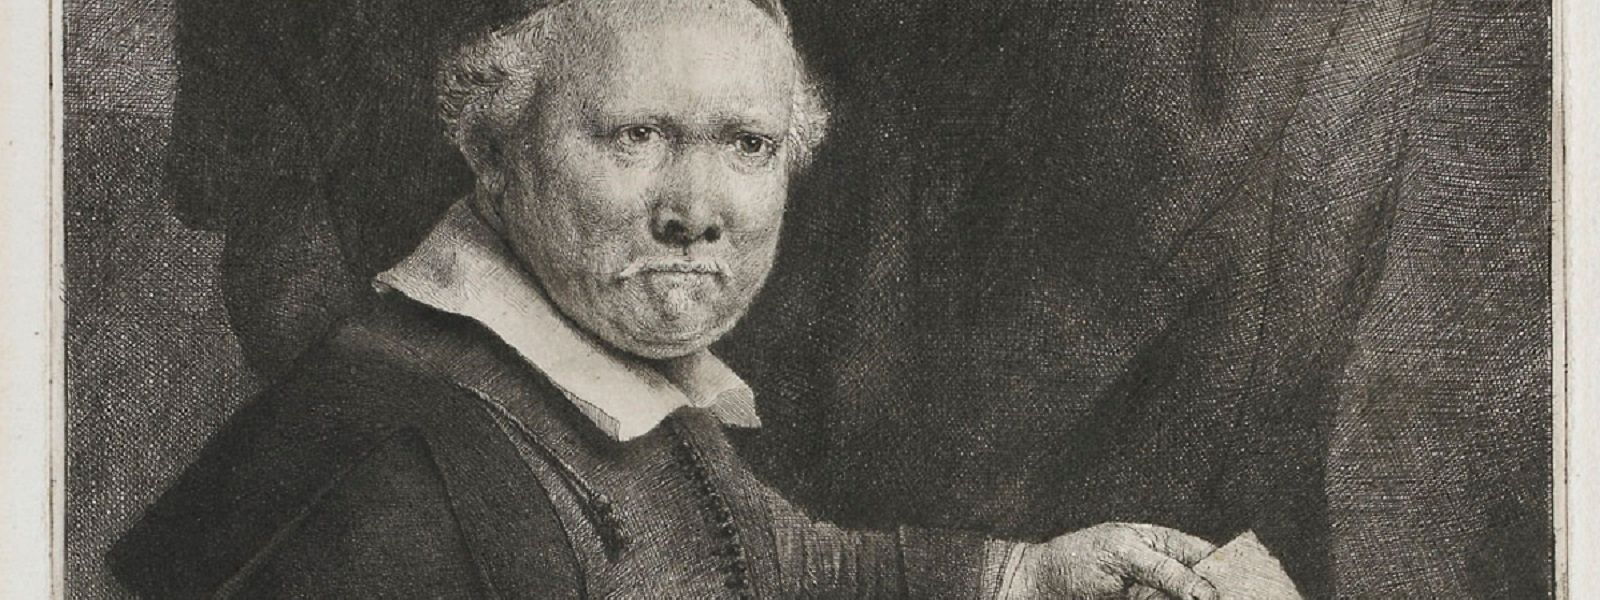 Die Rembrandt-Radierung zeigt das Porträt eines Mannes. Dabei handelt es sich um Willemsz van Coppenol, den Leiter der sogenannten französischen Schule.